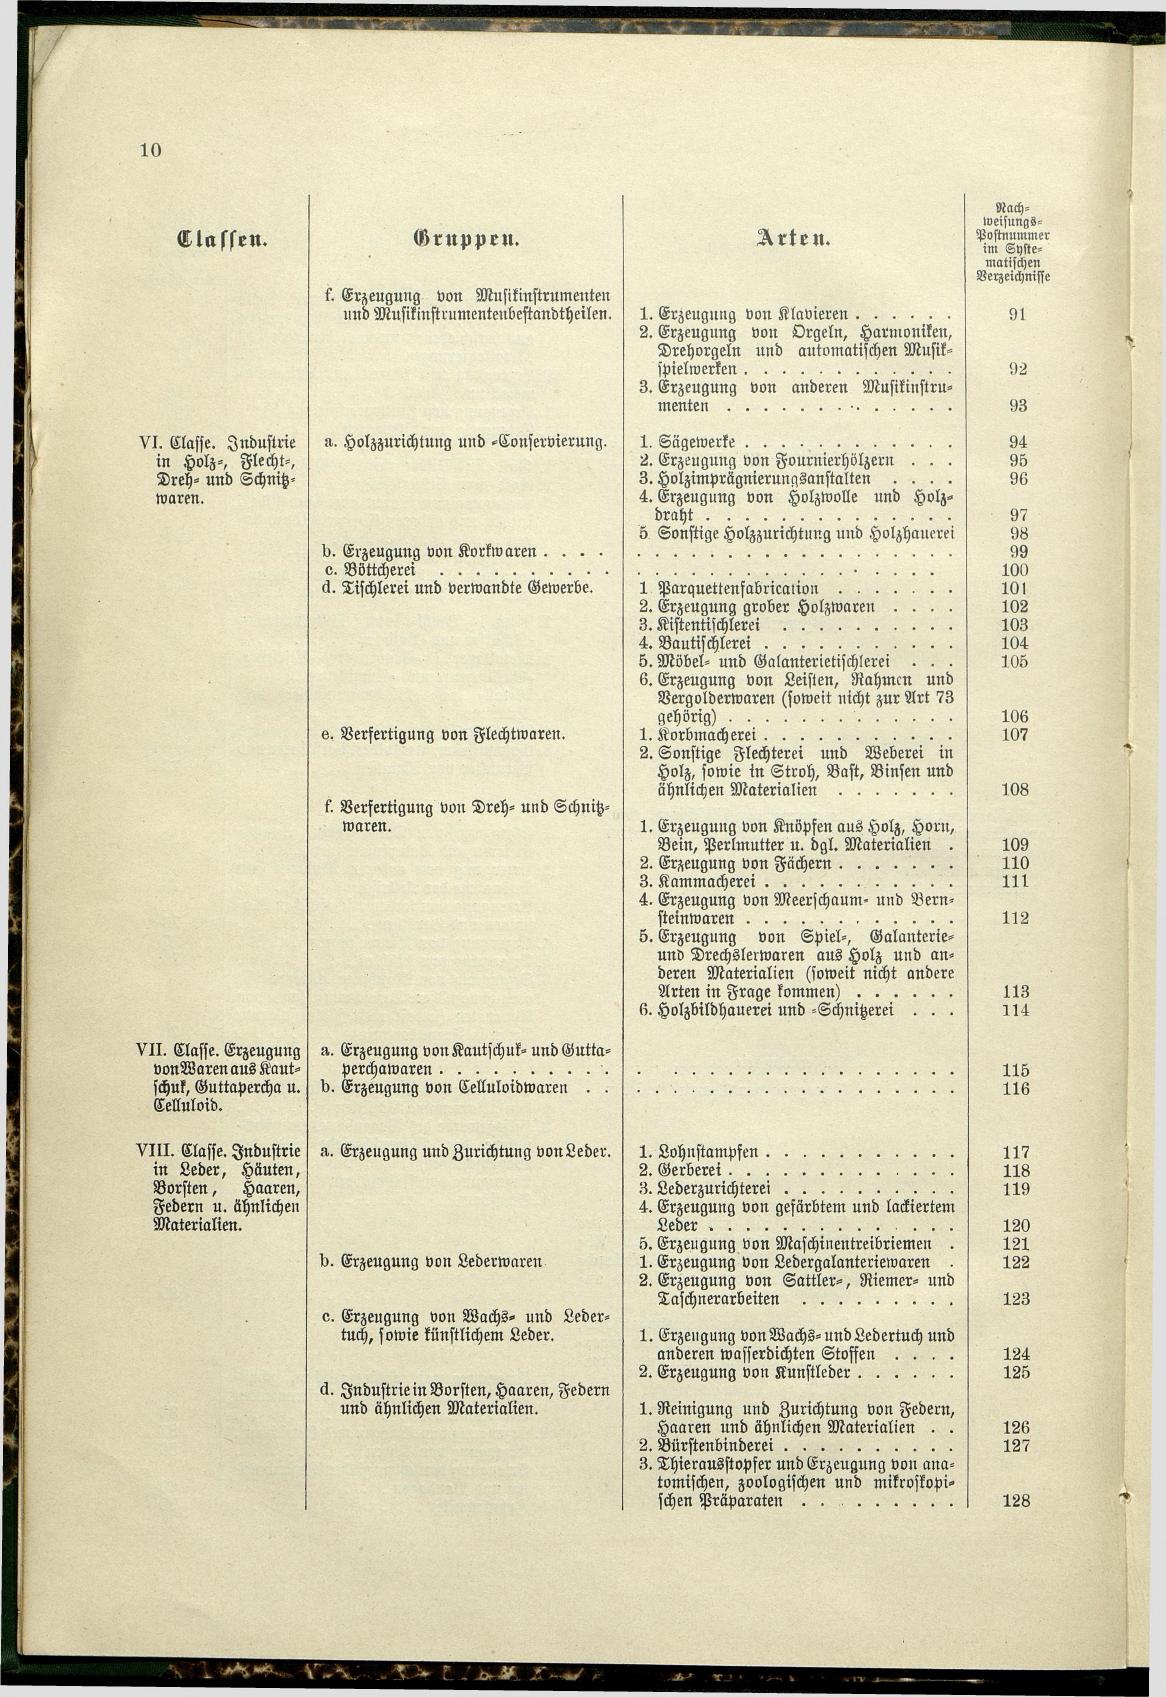 Verzeichnis der Gewerbe der im Reichsrathe vertretenen Königreiche und Länder 1900 - Page 14